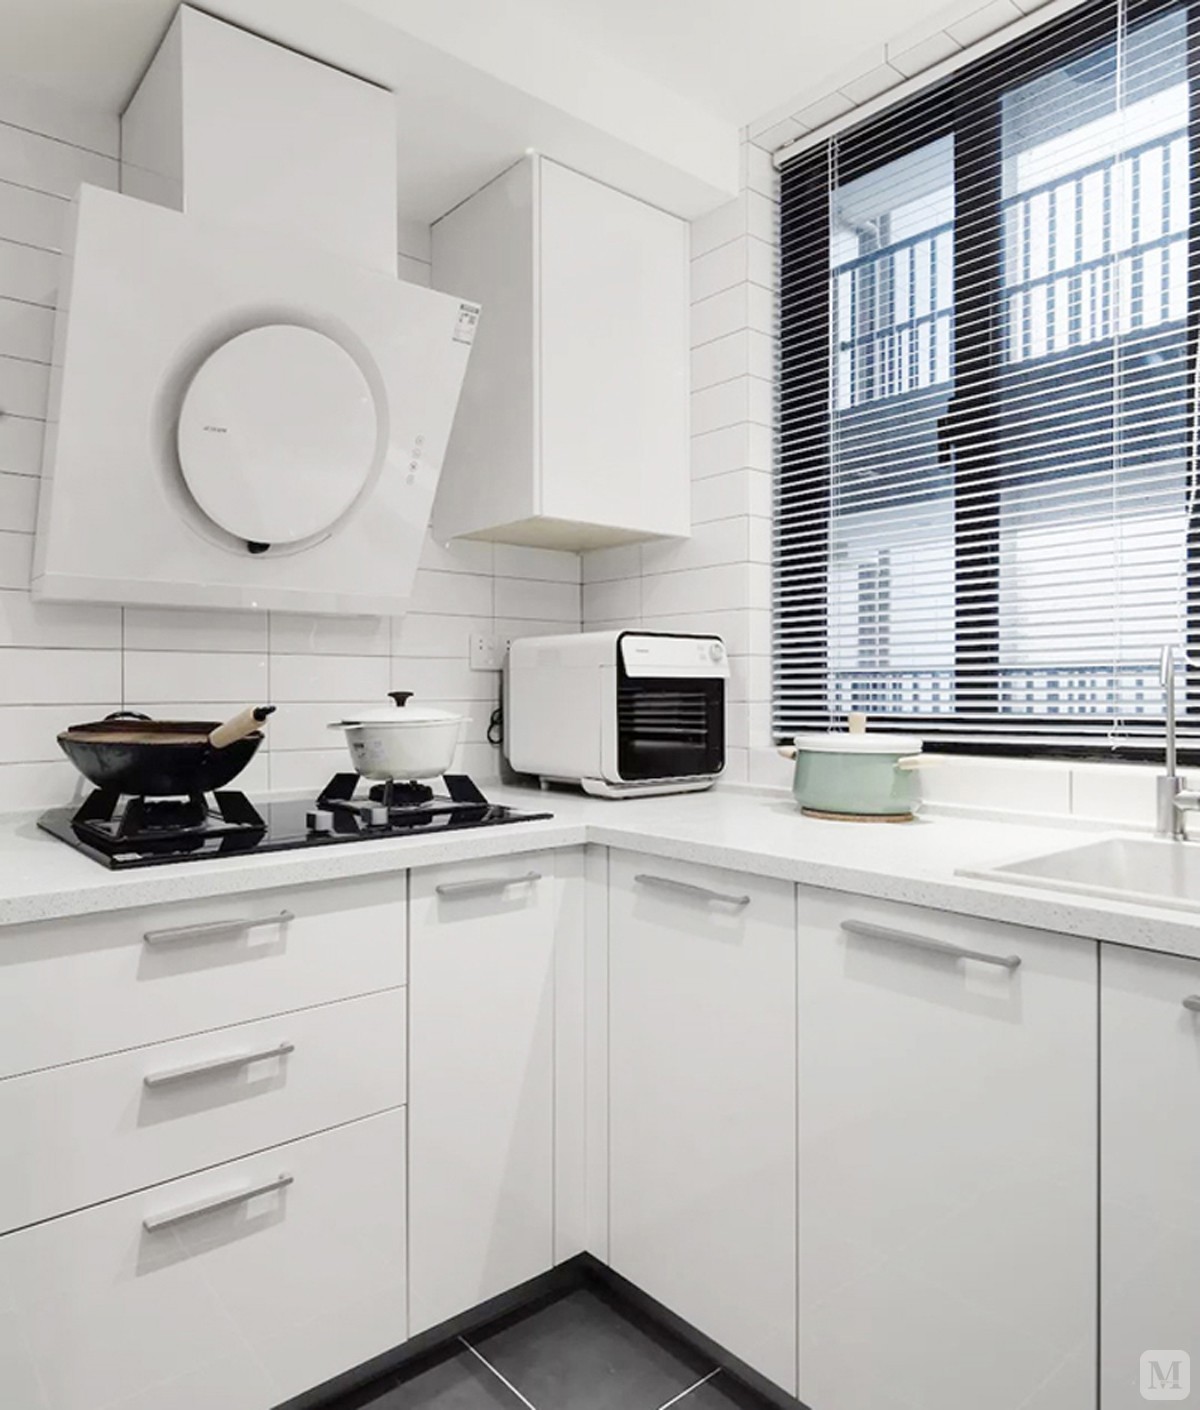 厨房选用白色的橱柜,墙面铺设白色哑光砖,搭配灰色地砖,整体显得干净